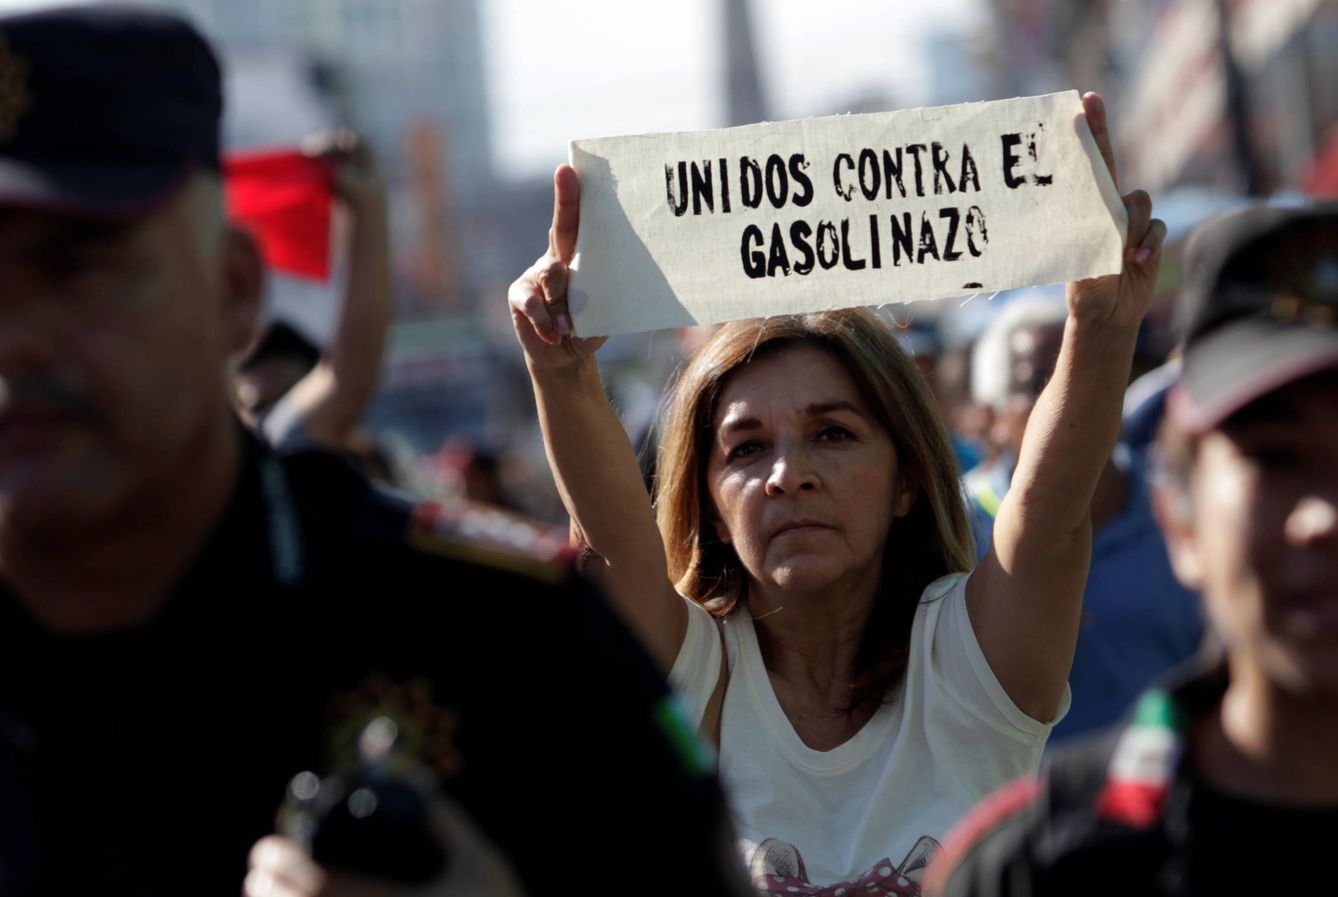 Una mujer durante una protesta contra el gasolinazo en Monterrey, México, el 15 de enero de 2017 (Reuters).